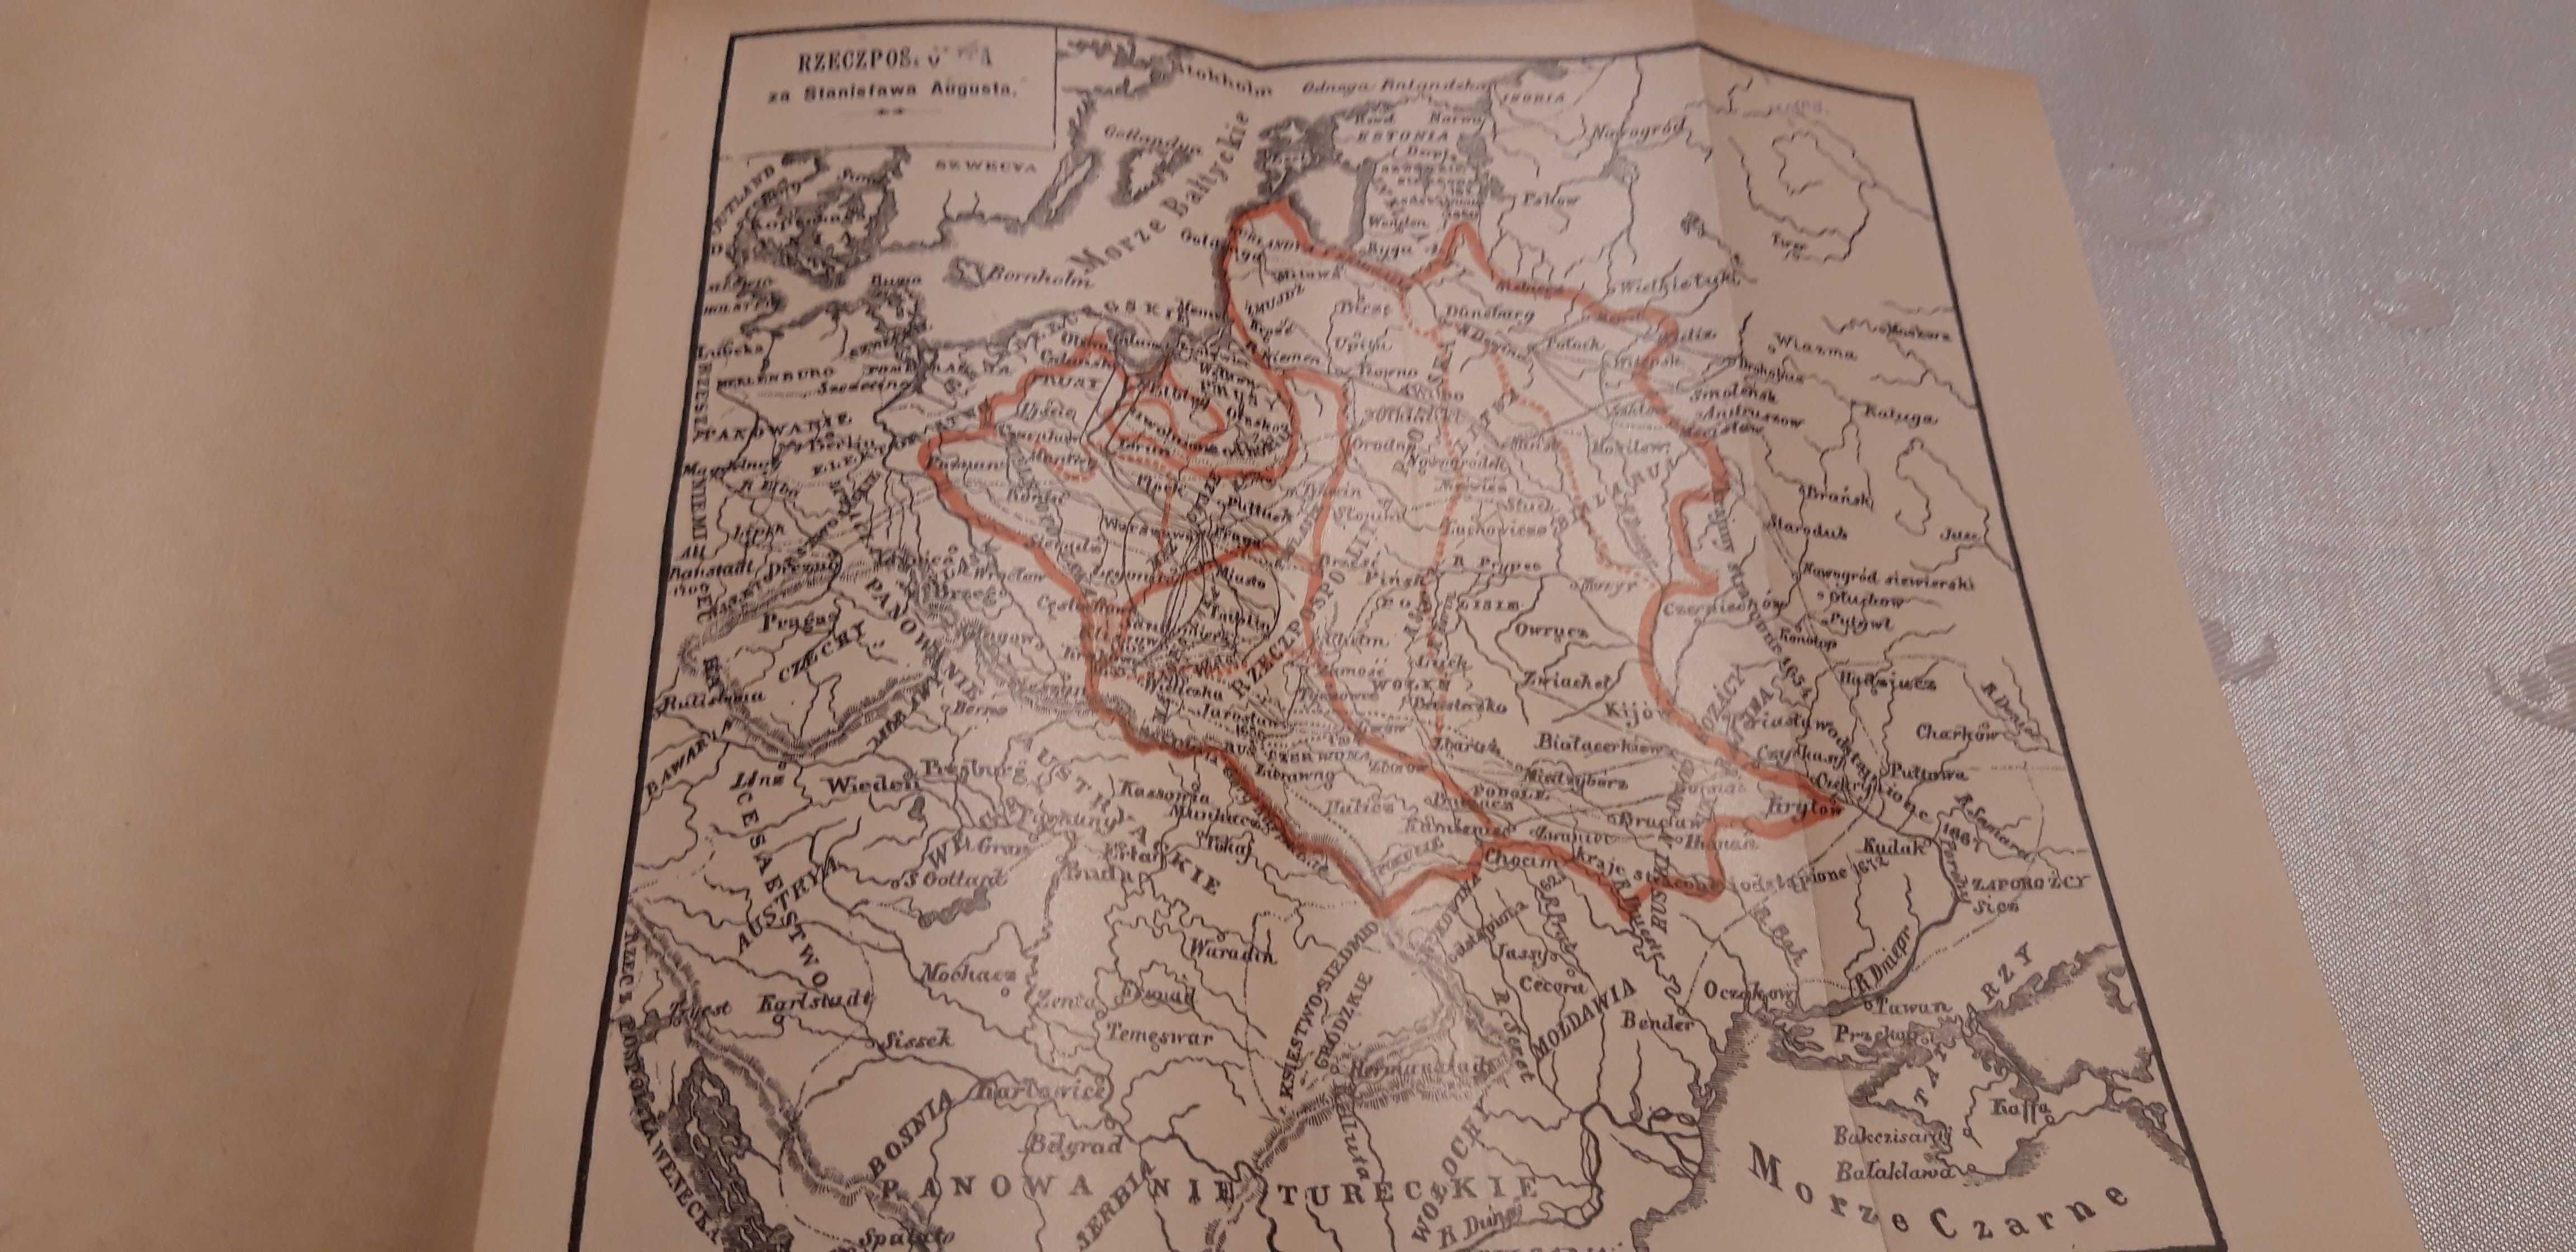 Dzieje Narodu Polskiego,1-4 -Smoleński- W-wa 1898, 2. vol., opr.,mapki